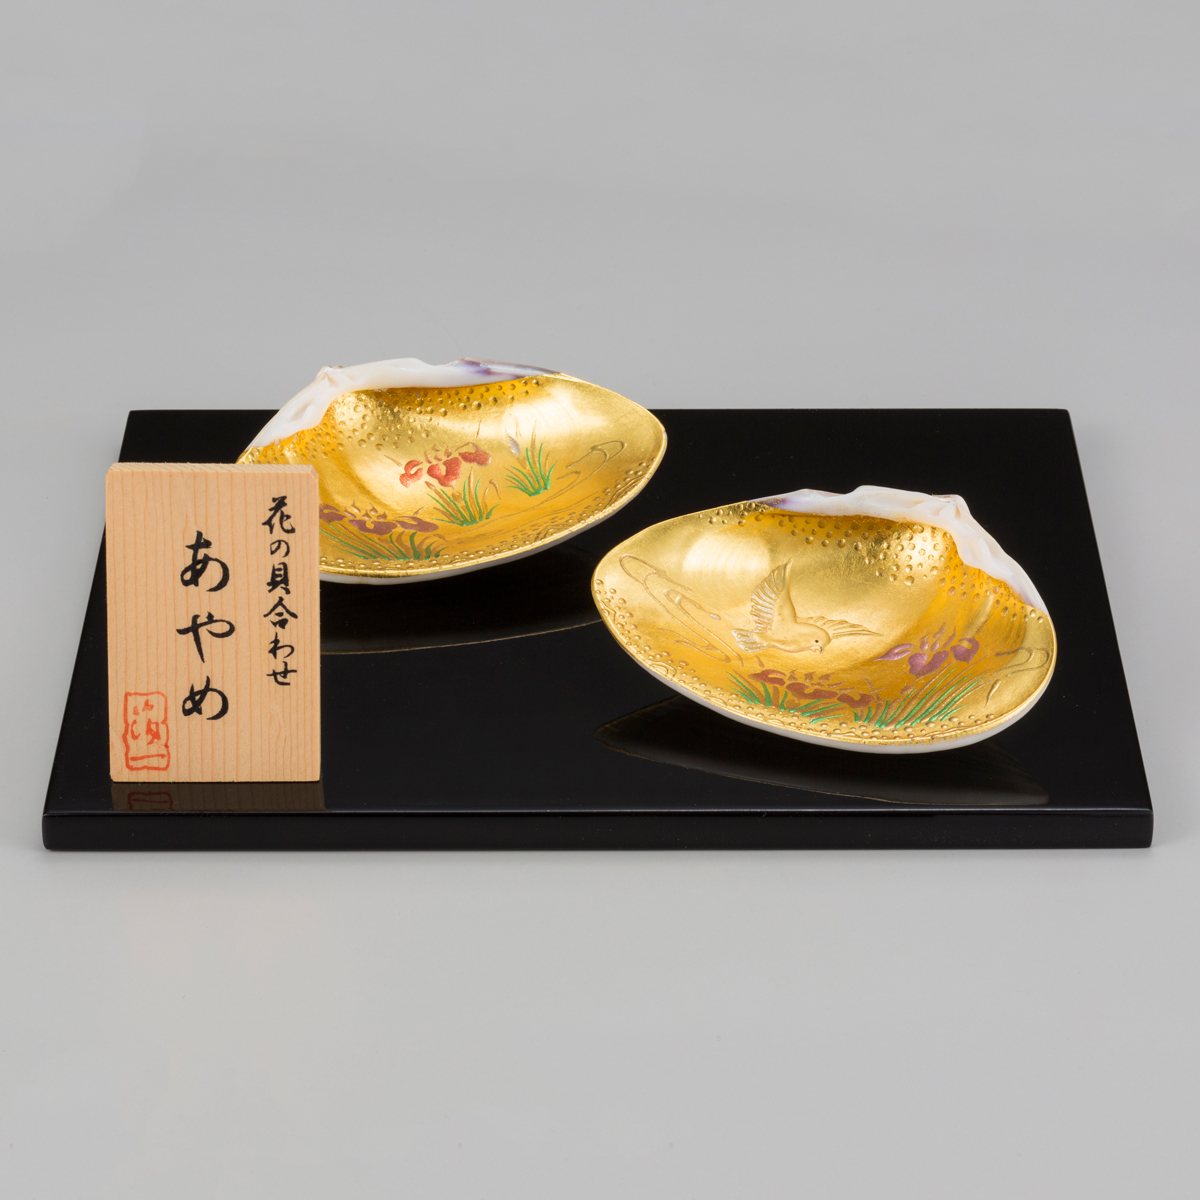 花の貝合わせ 菖蒲に小鳥図 金沢金箔の箔一オンラインショップ Hakuichi Style